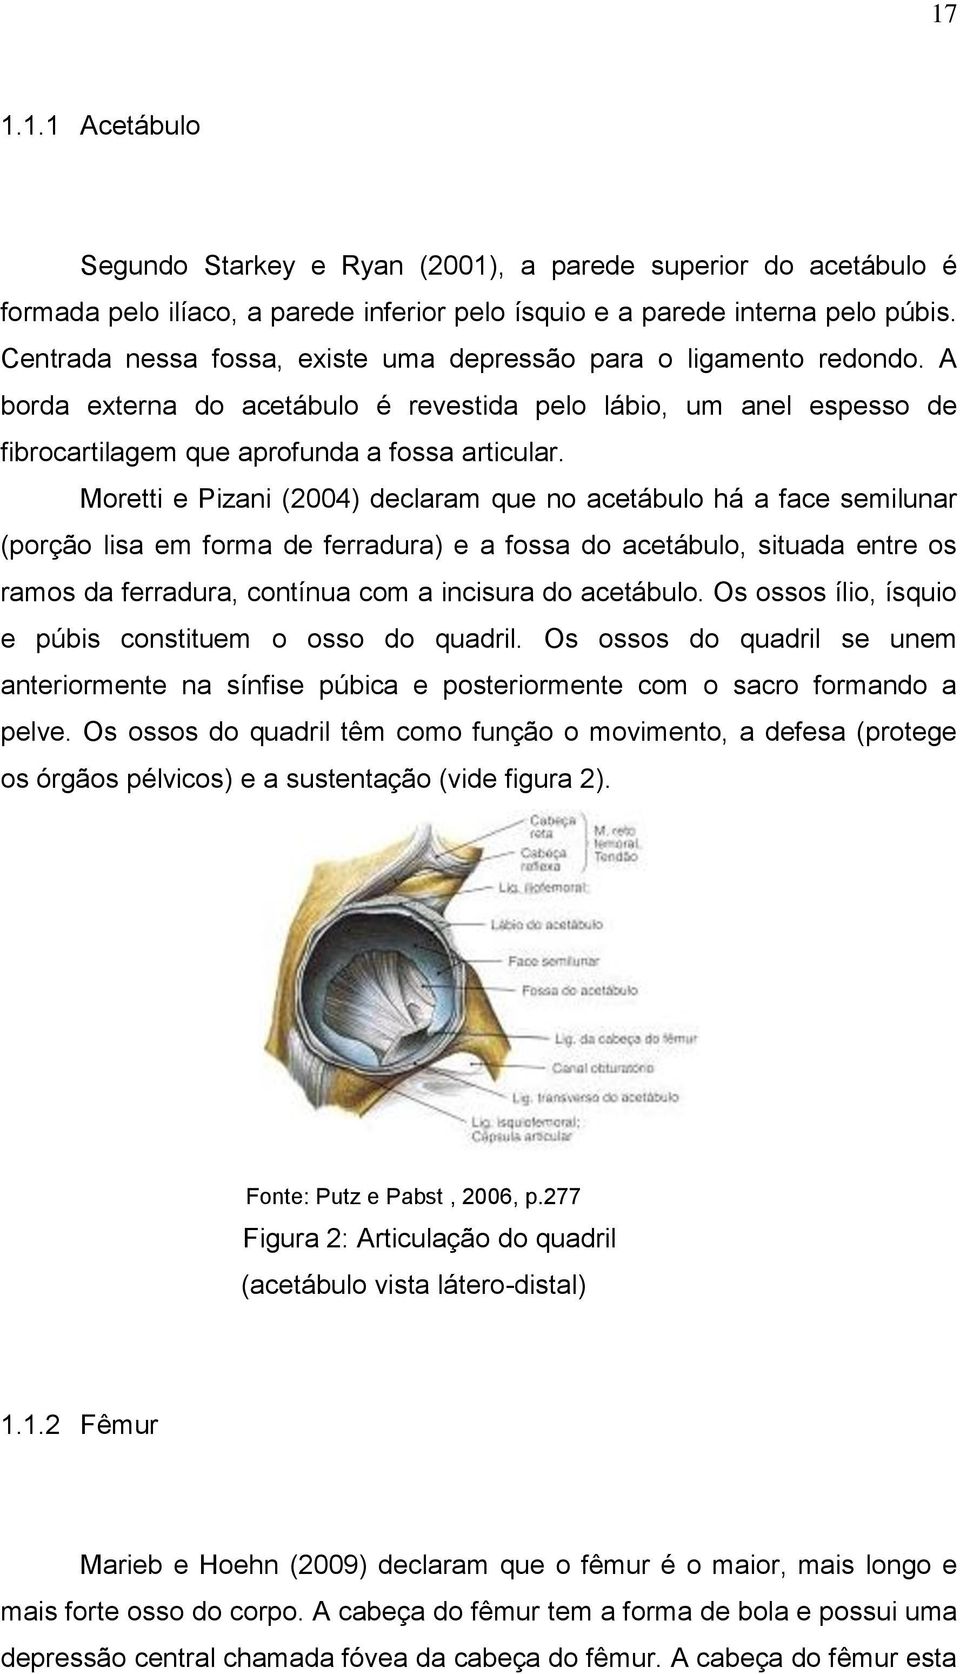 Moretti e Pizani (2004) declaram que no acetábulo há a face semilunar (porção lisa em forma de ferradura) e a fossa do acetábulo, situada entre os ramos da ferradura, contínua com a incisura do